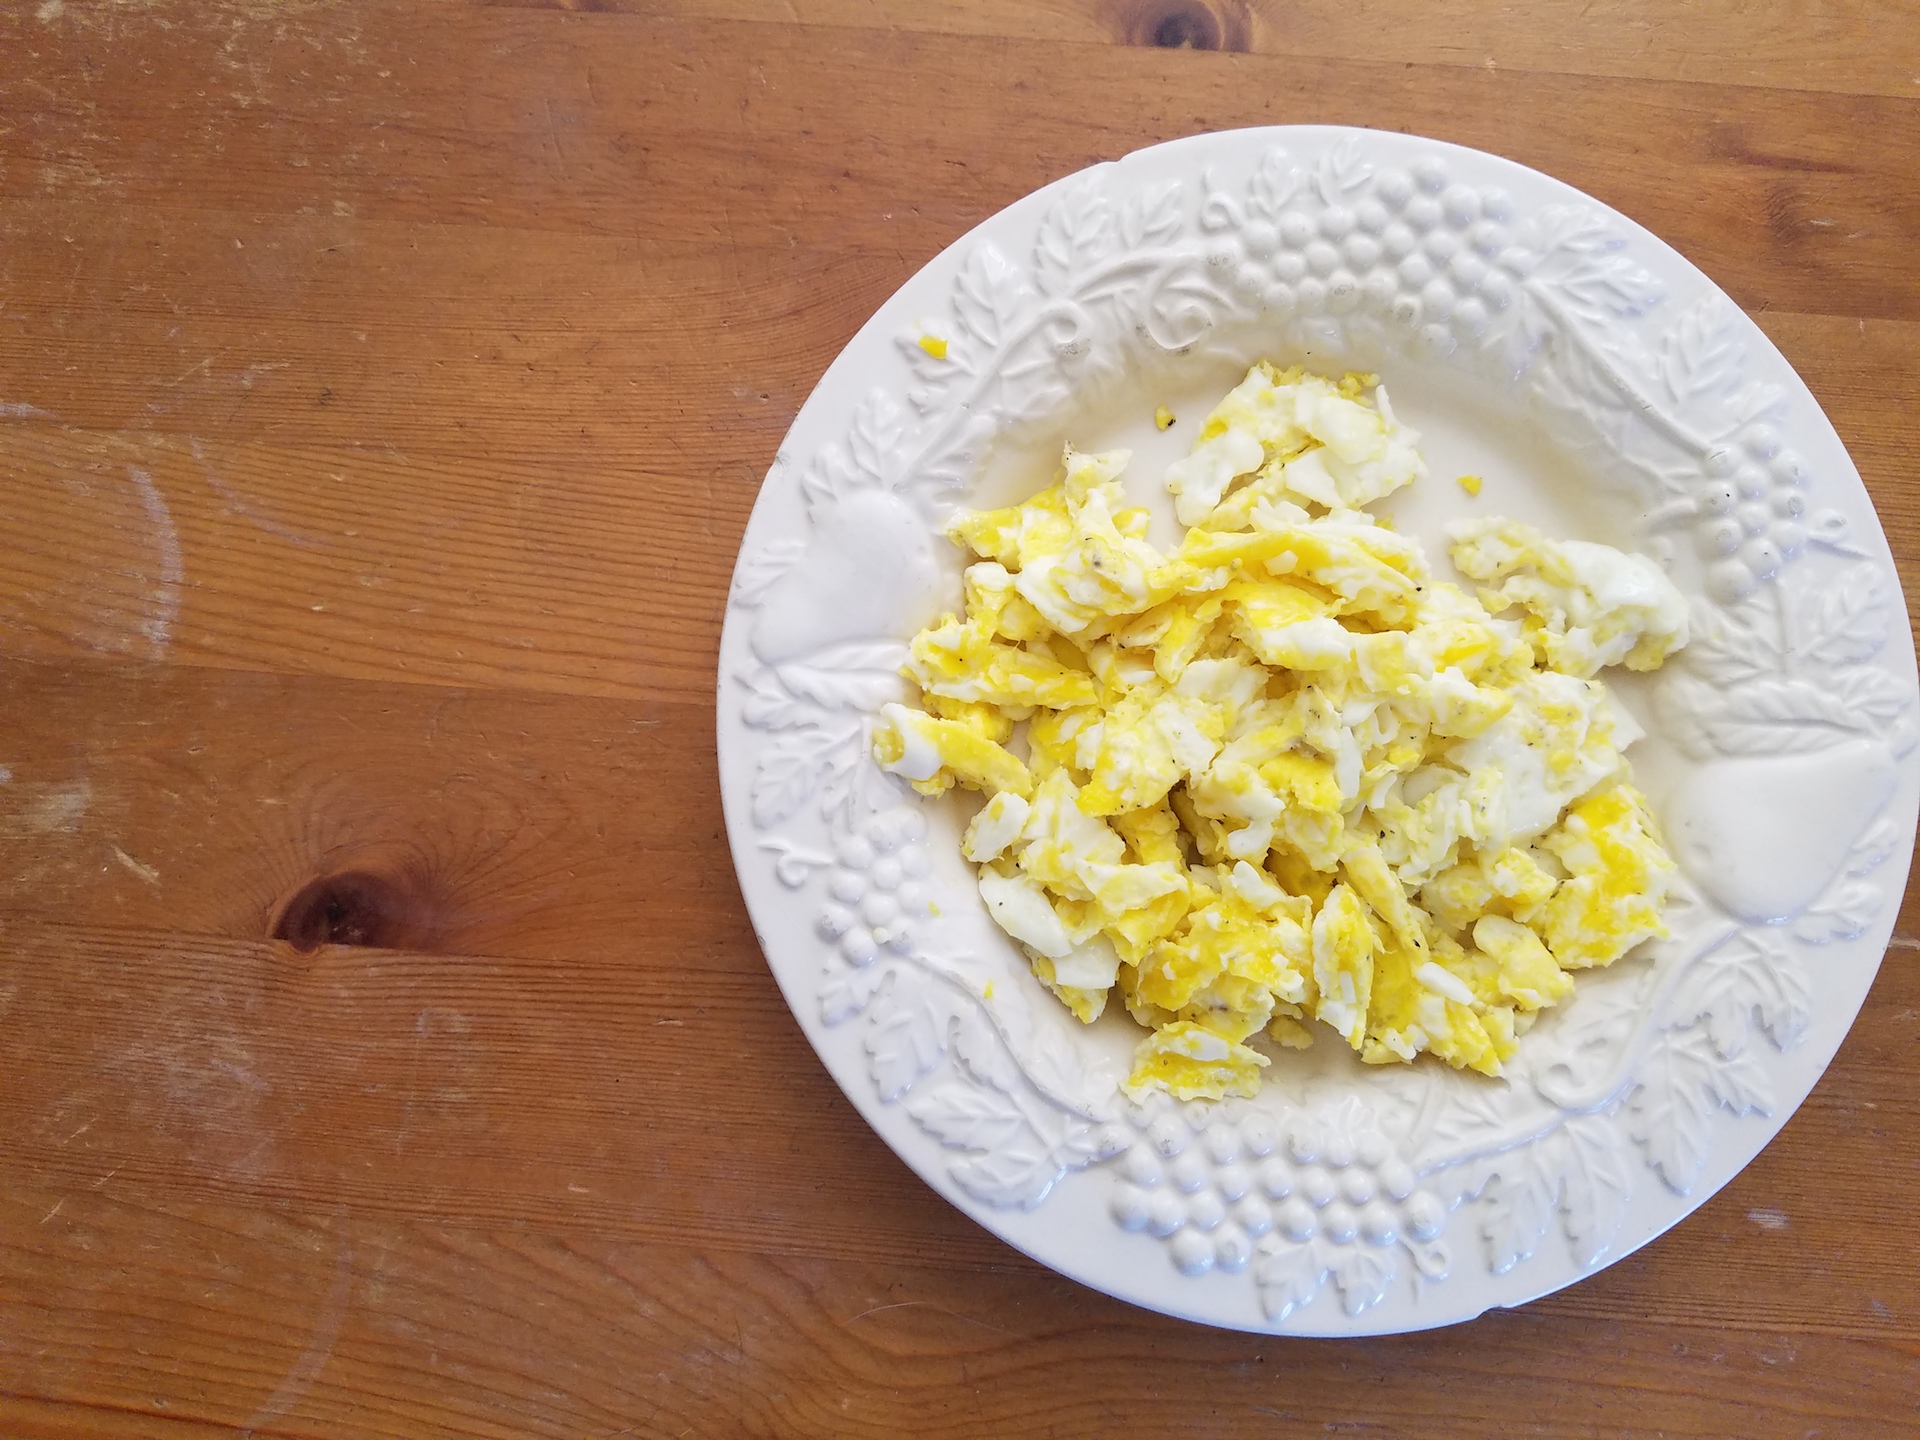 Scrambled eggs from Judy's Family Farm